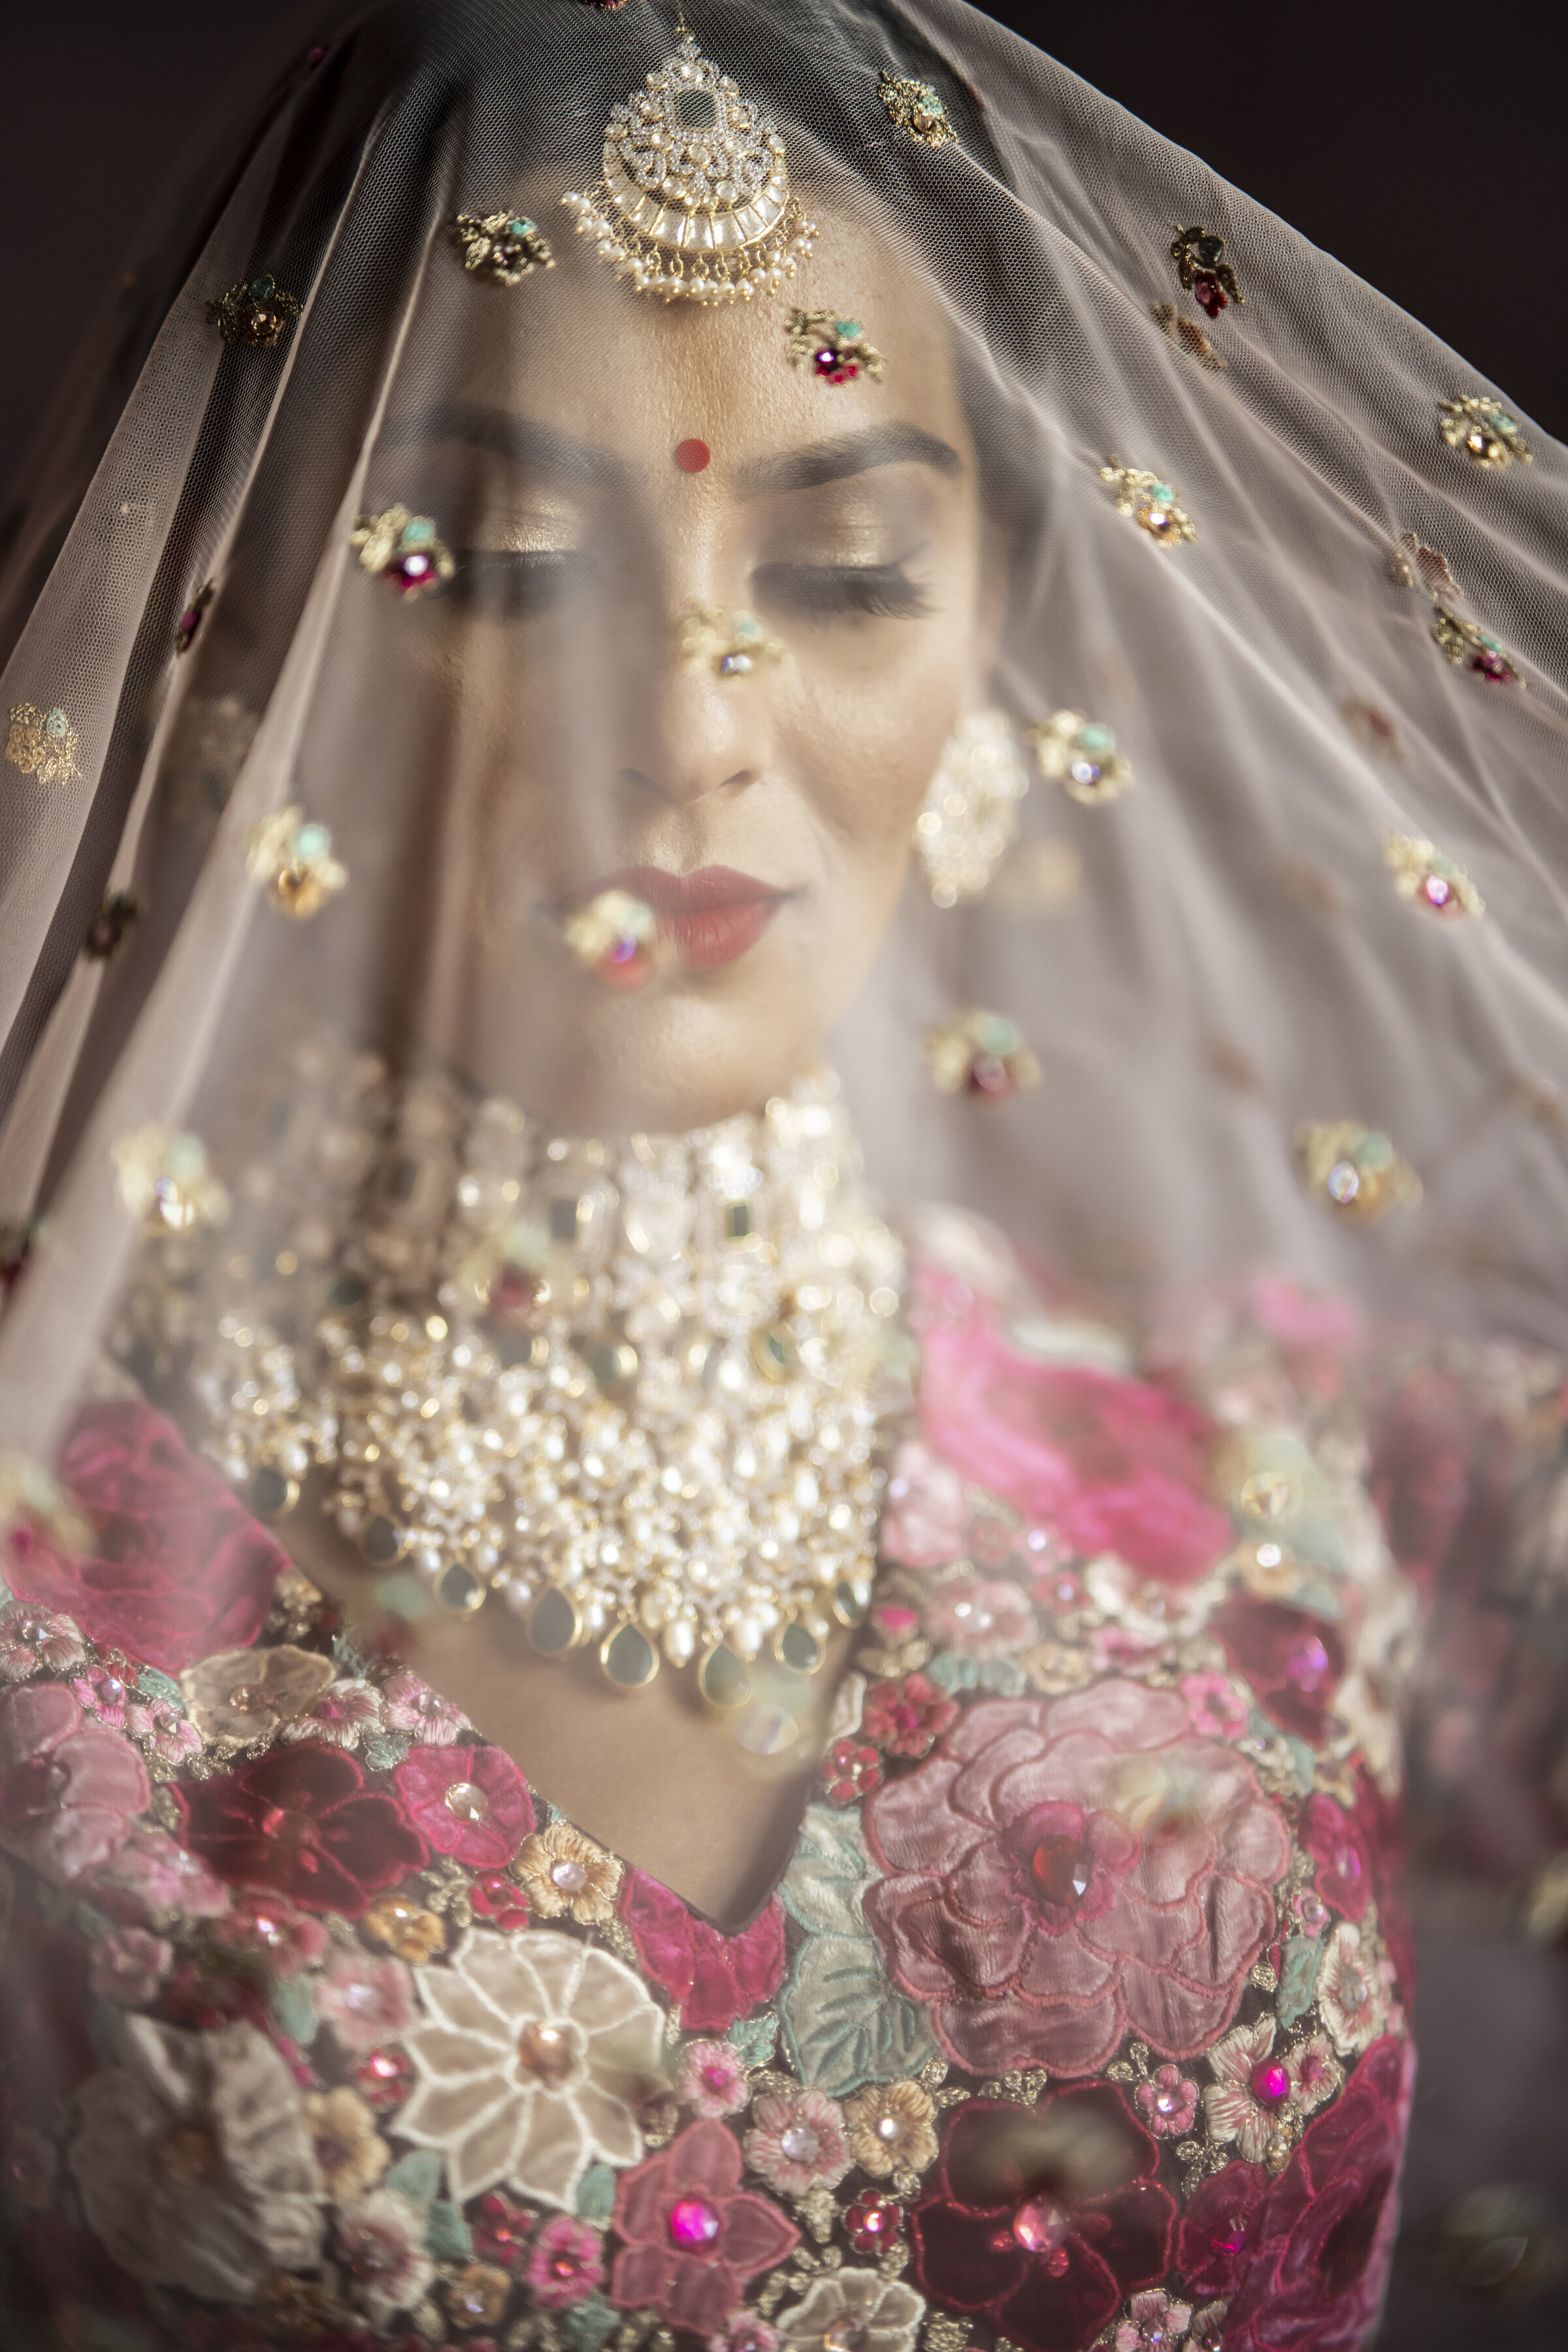 Indian Bride spreading her gem adorned veil.